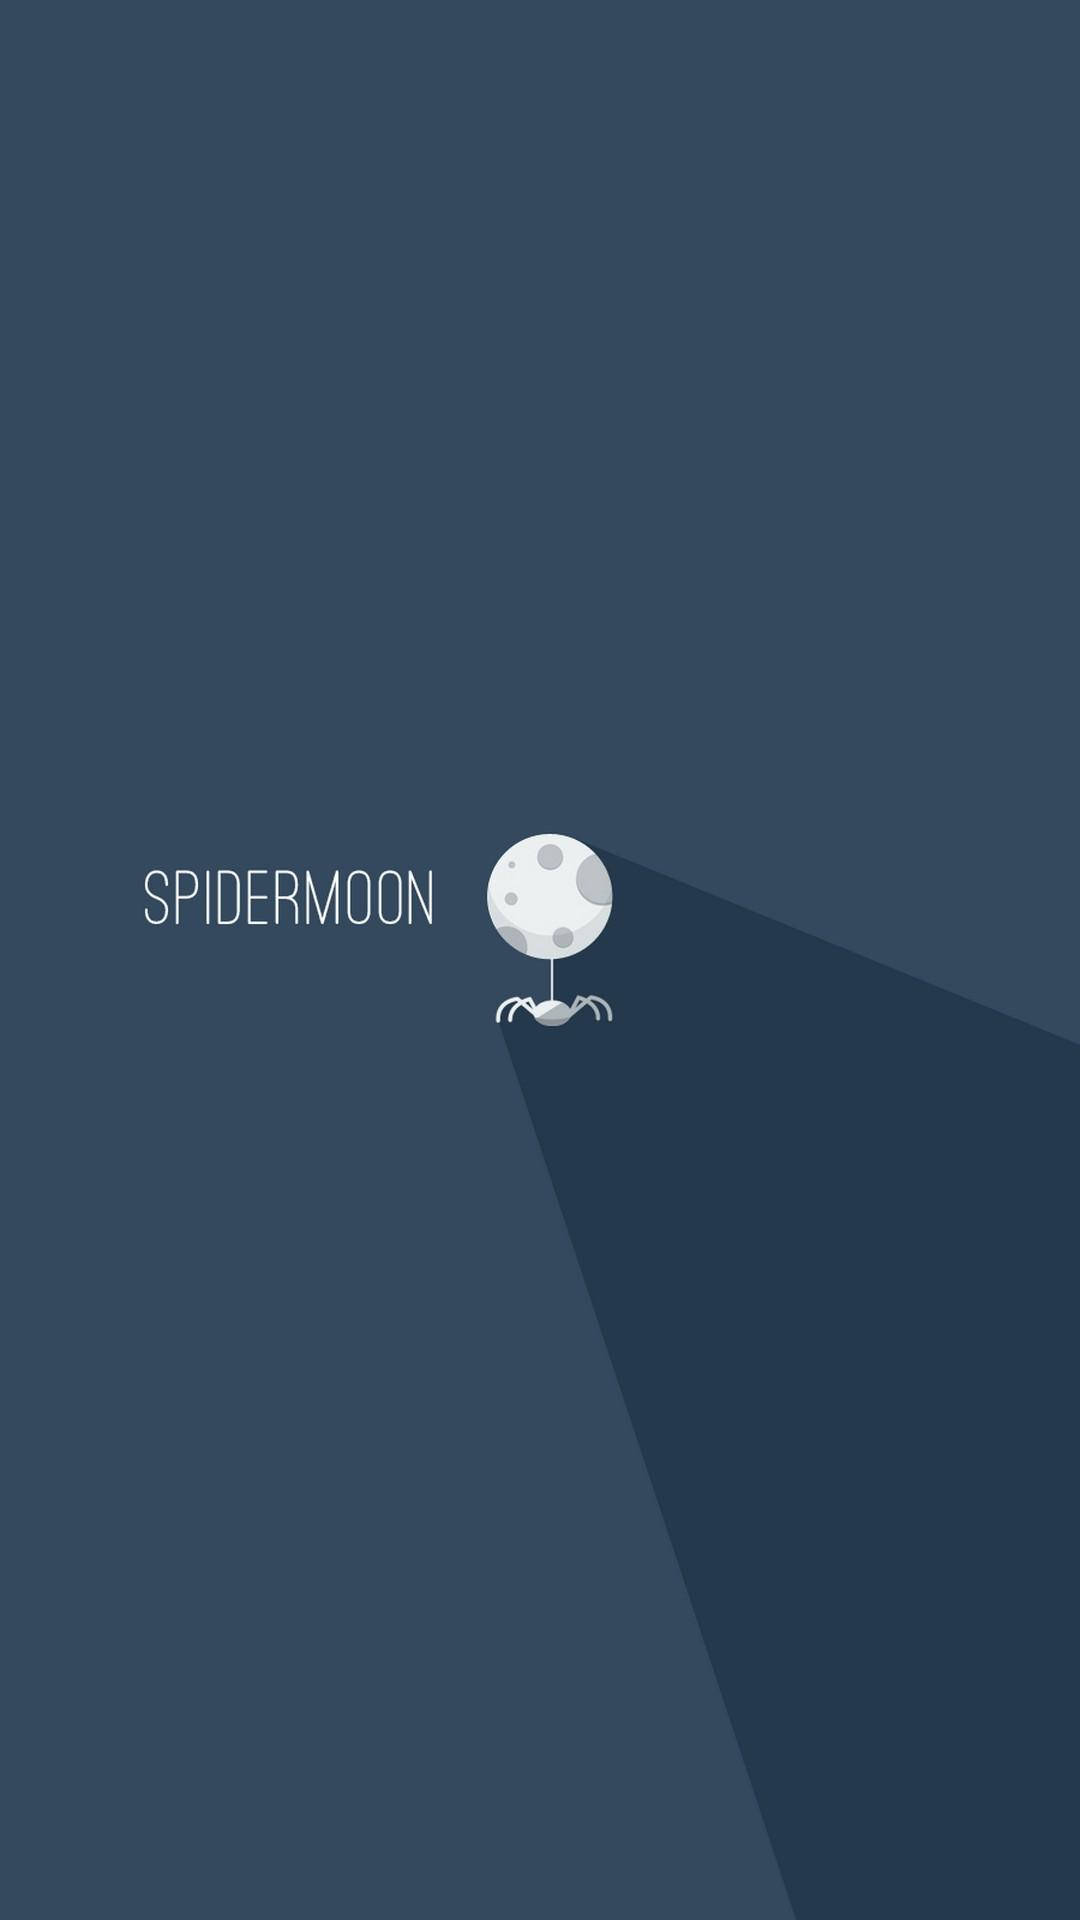 Spidermoon Minimalist Android Background